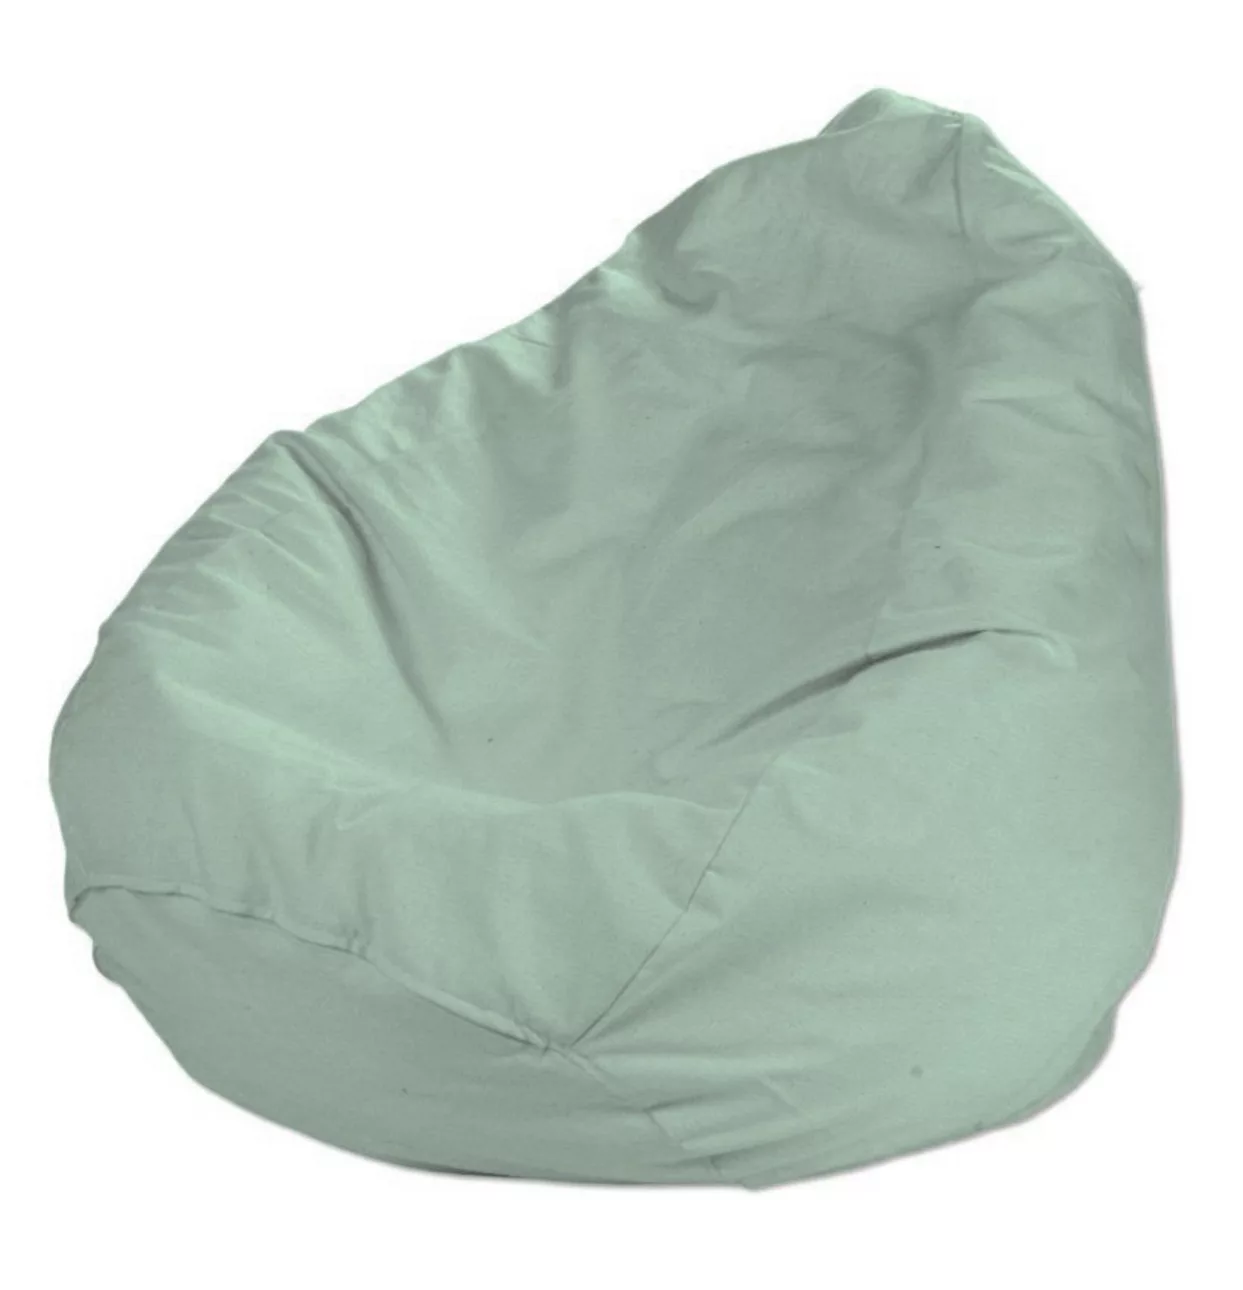 Bezug für Sitzsack, grün, Bezug für Sitzsack Ø50 x 85 cm, Loneta (133-61) günstig online kaufen